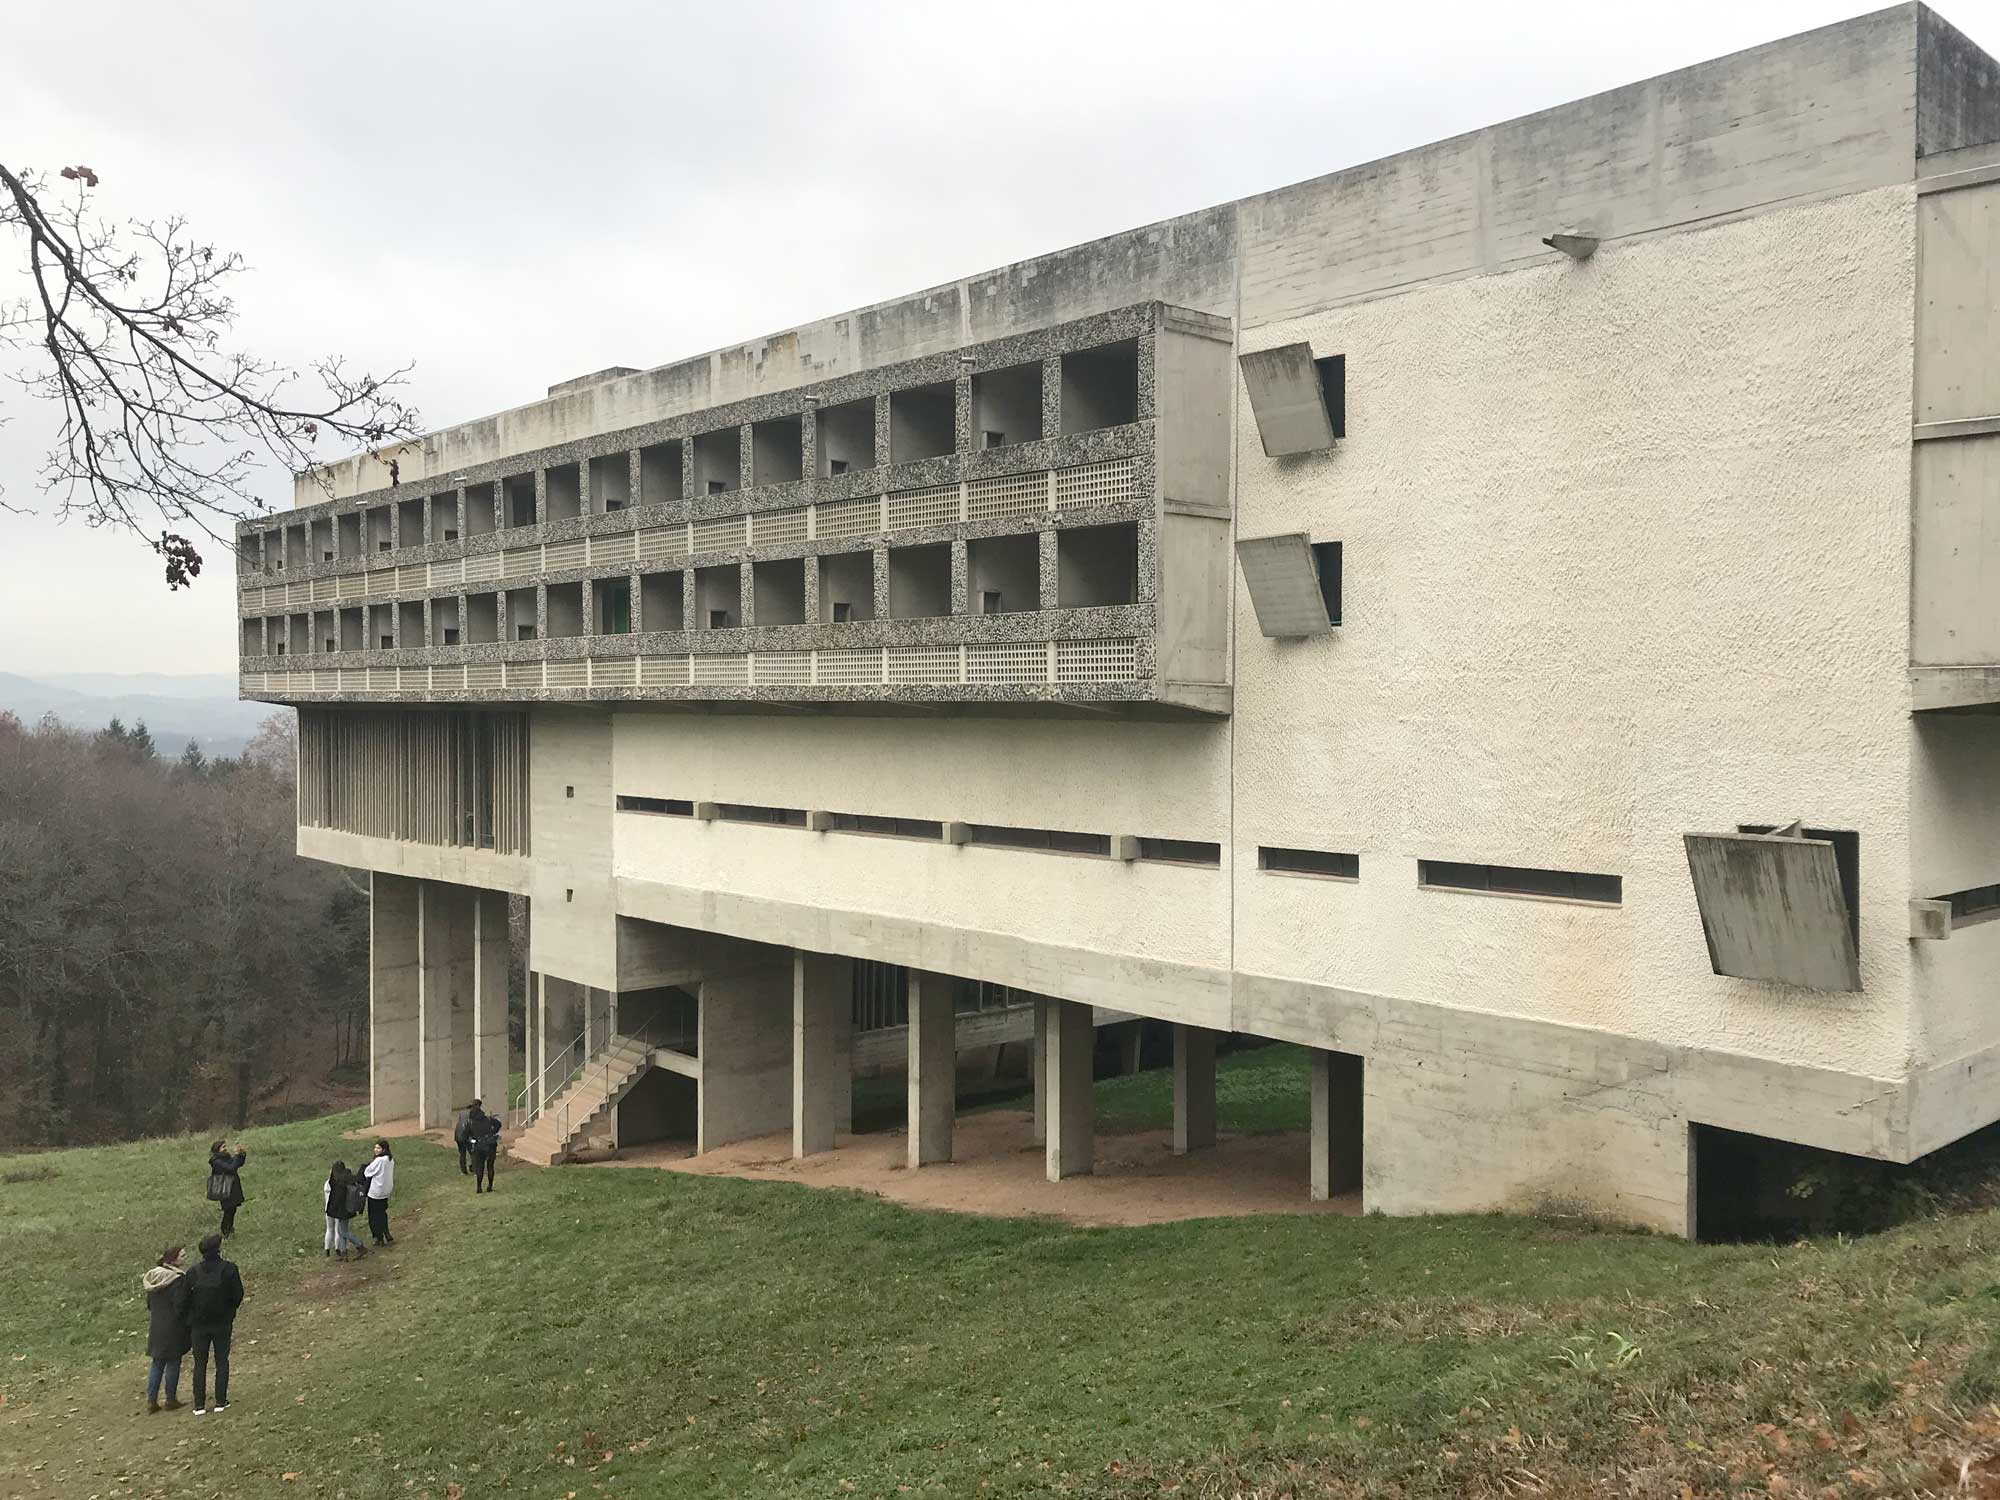 Monastery-of-La-Tourette-Le-Corbusier-openstudio-architects